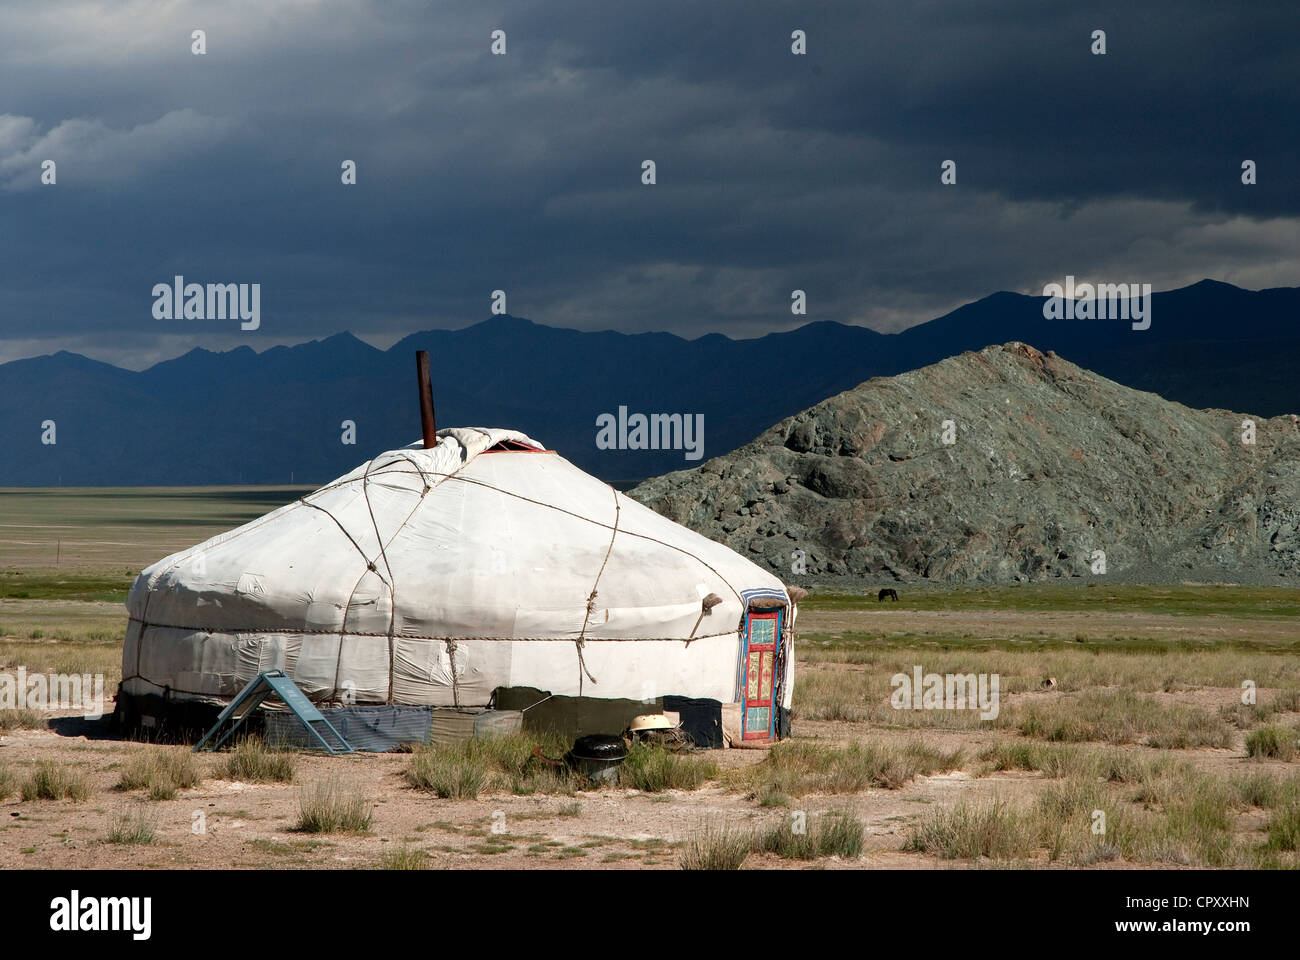 Mongolia, Khovd Region, Kazakh yurt Stock Photo